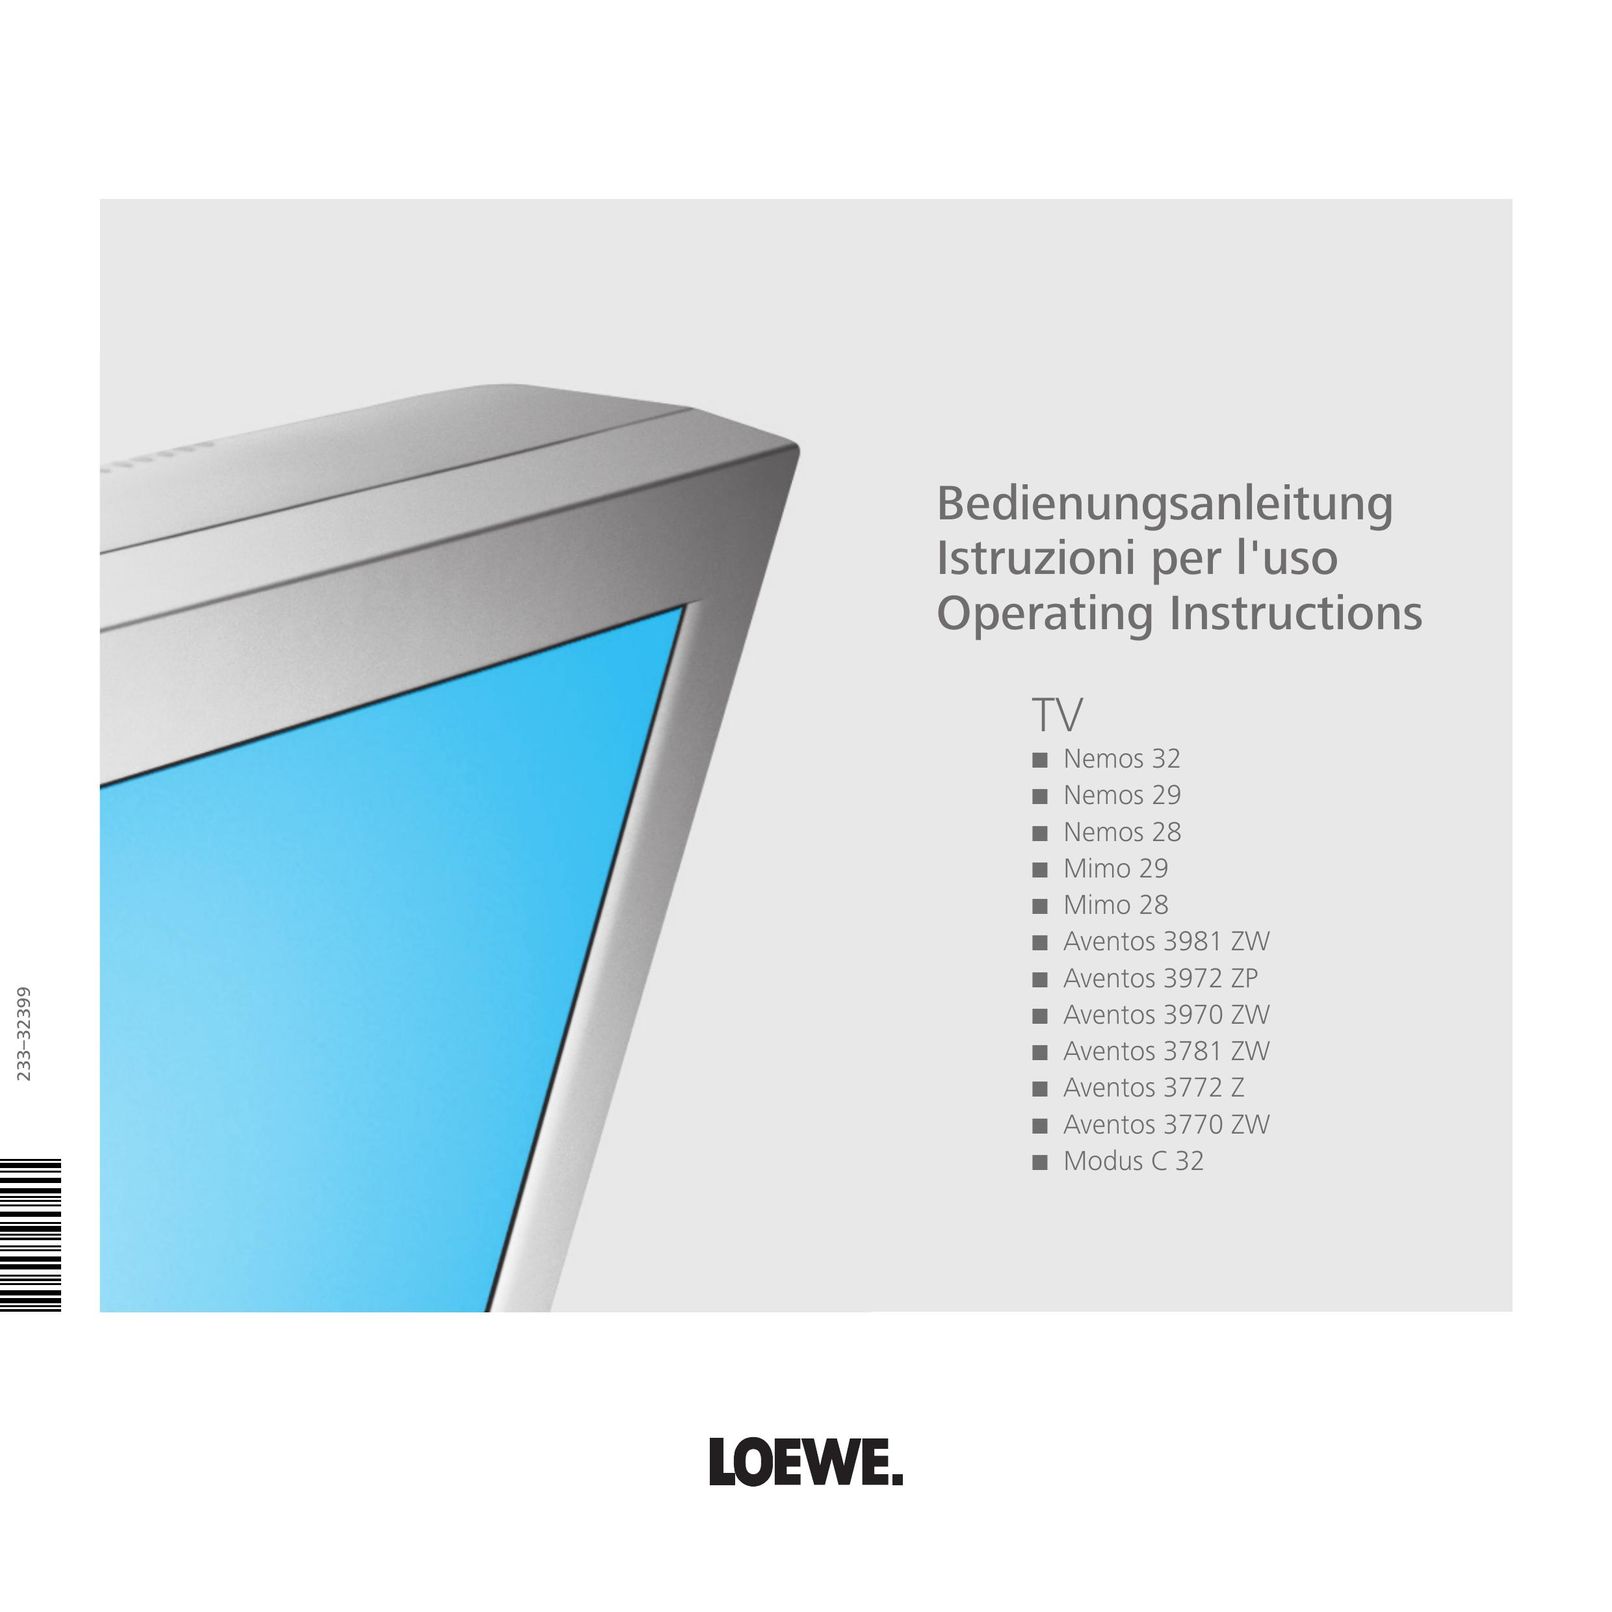 Loewe Aventos 3970 ZW Flat Panel Television User Manual